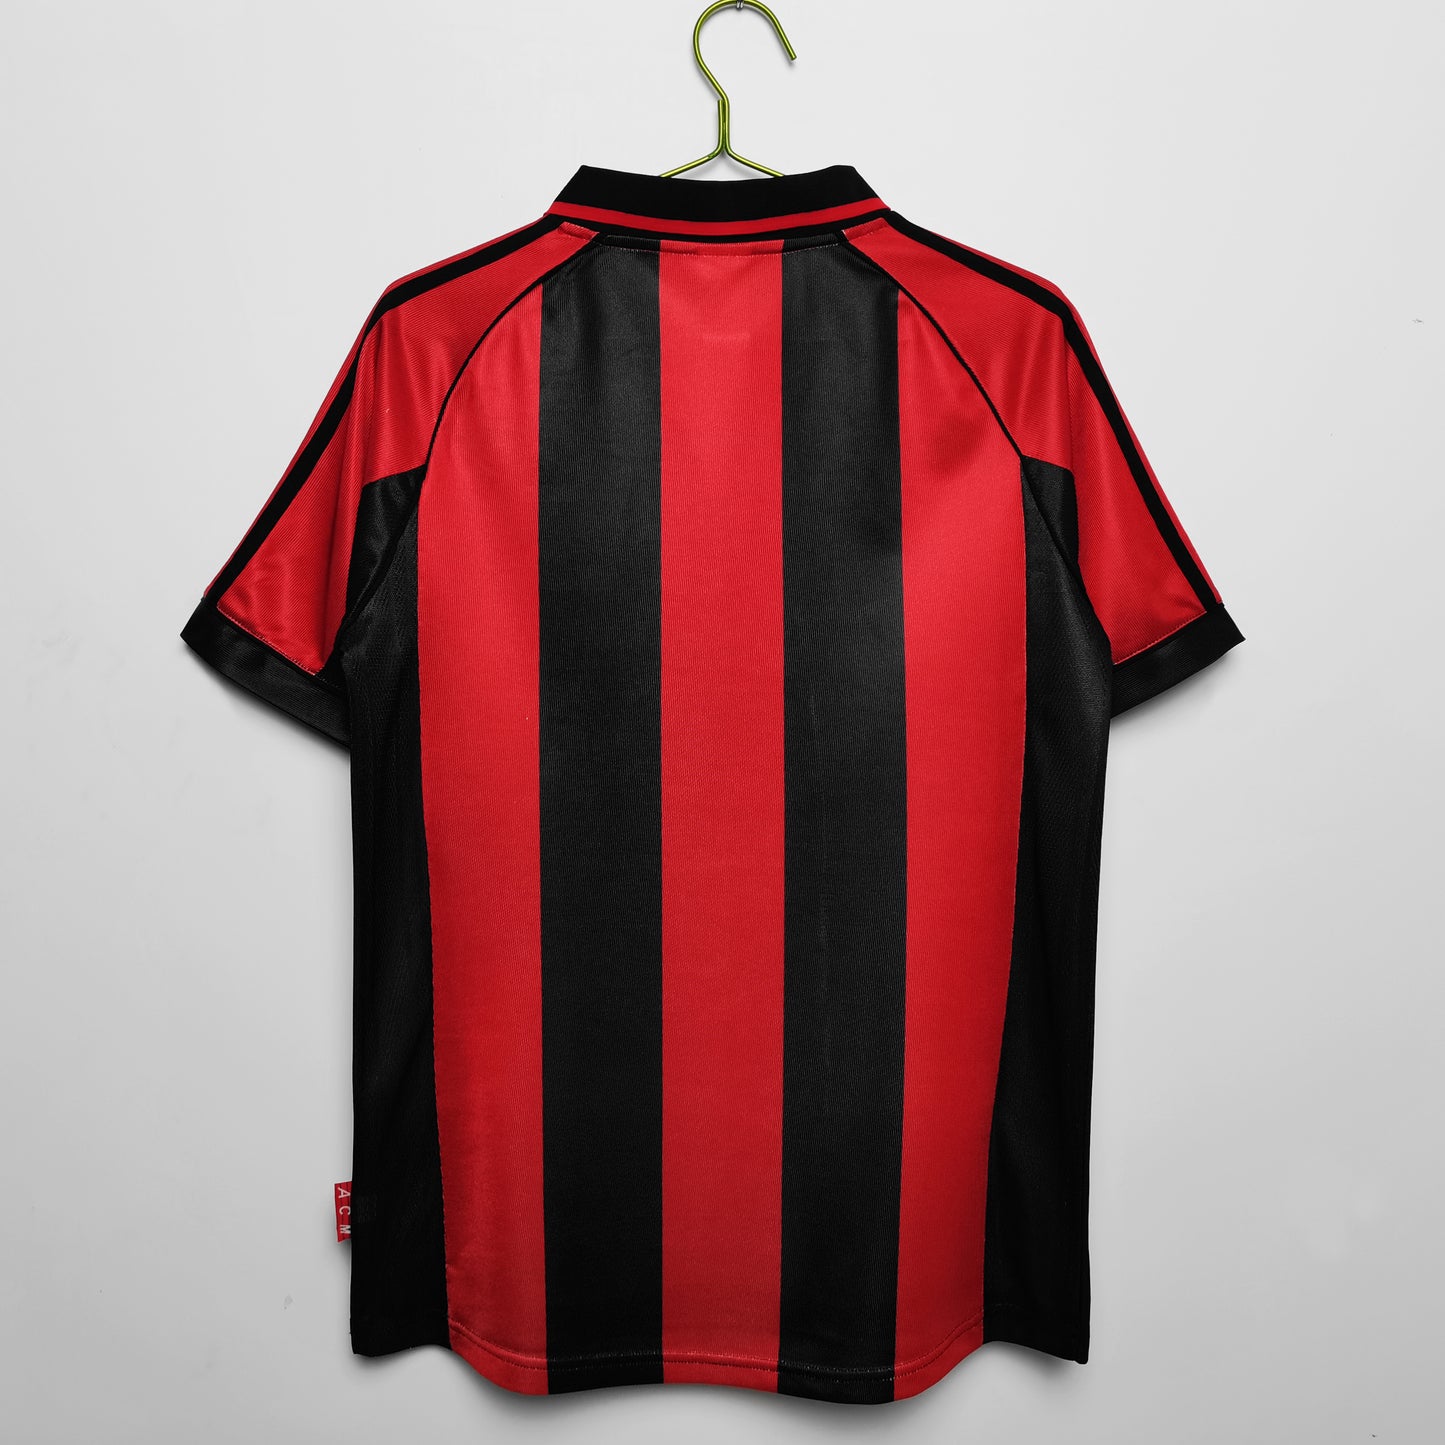 AC Milan 98/99 Home Jersey